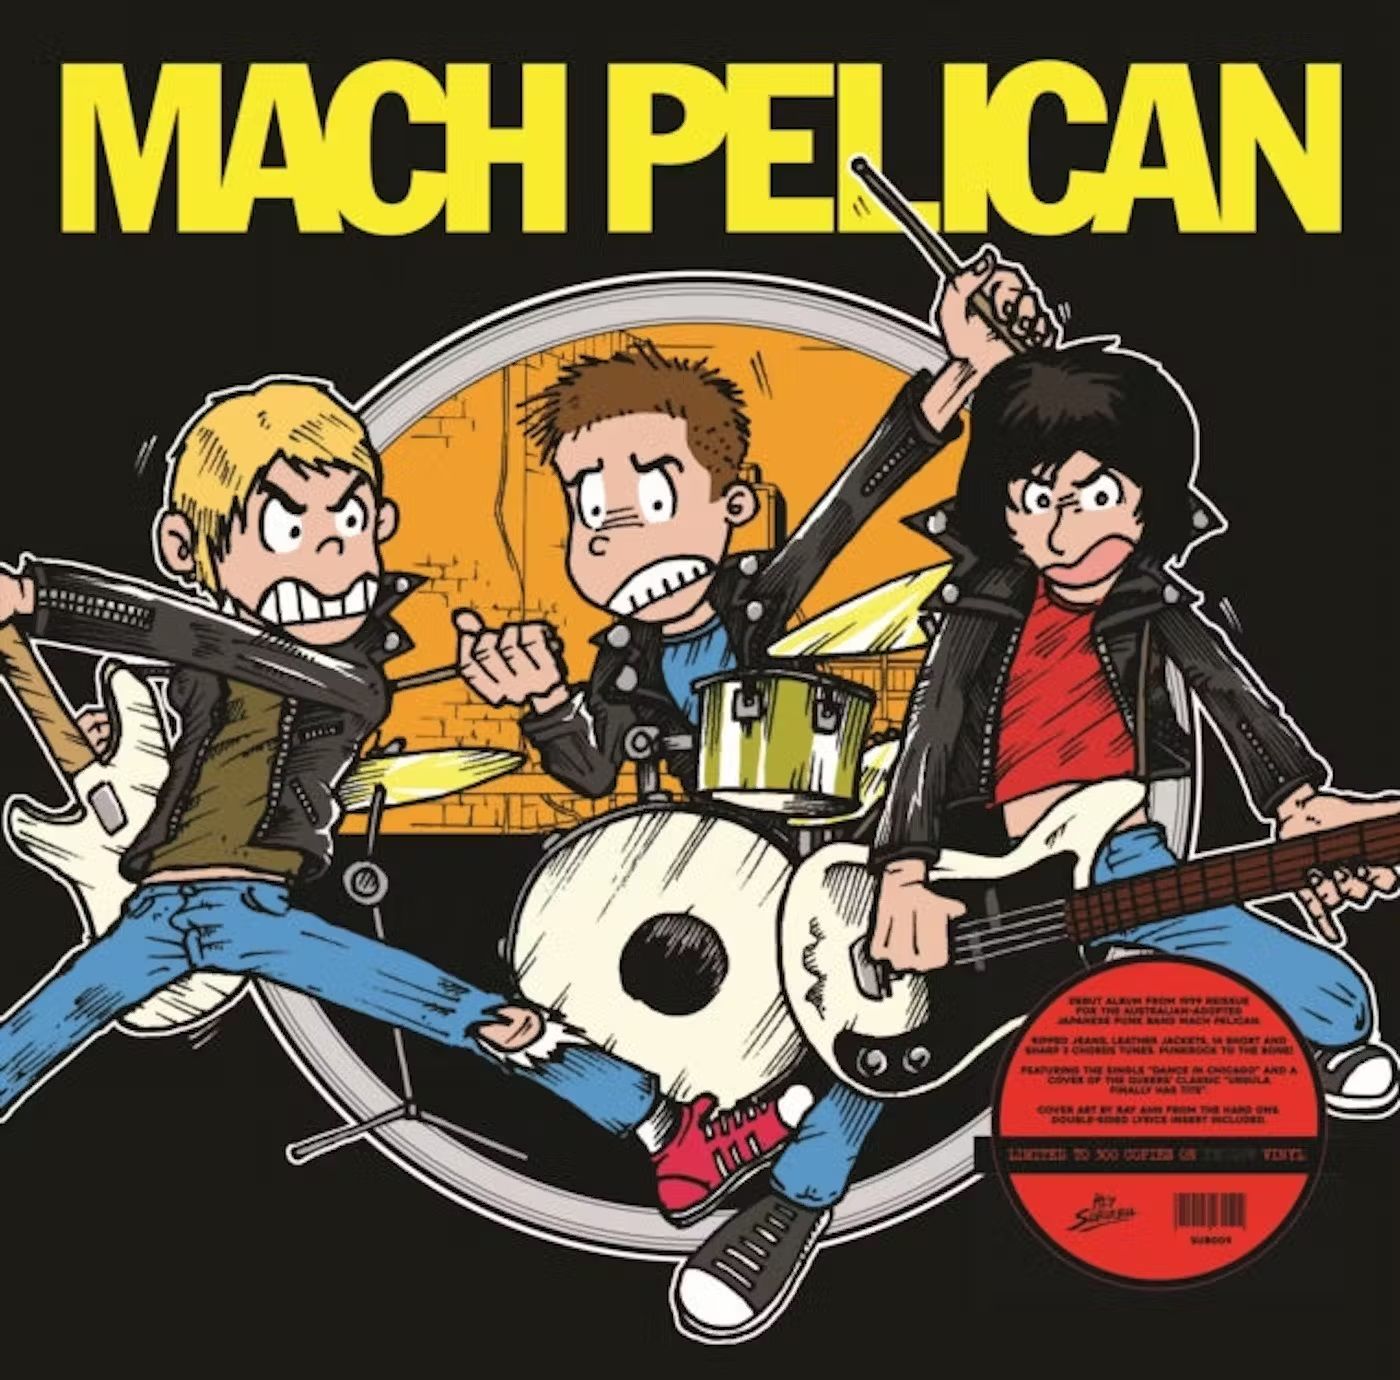 Mach Pelican - Mach Pelican (Ltd. Ed. Clear vinyl - 300 copies) - Vinyl - New